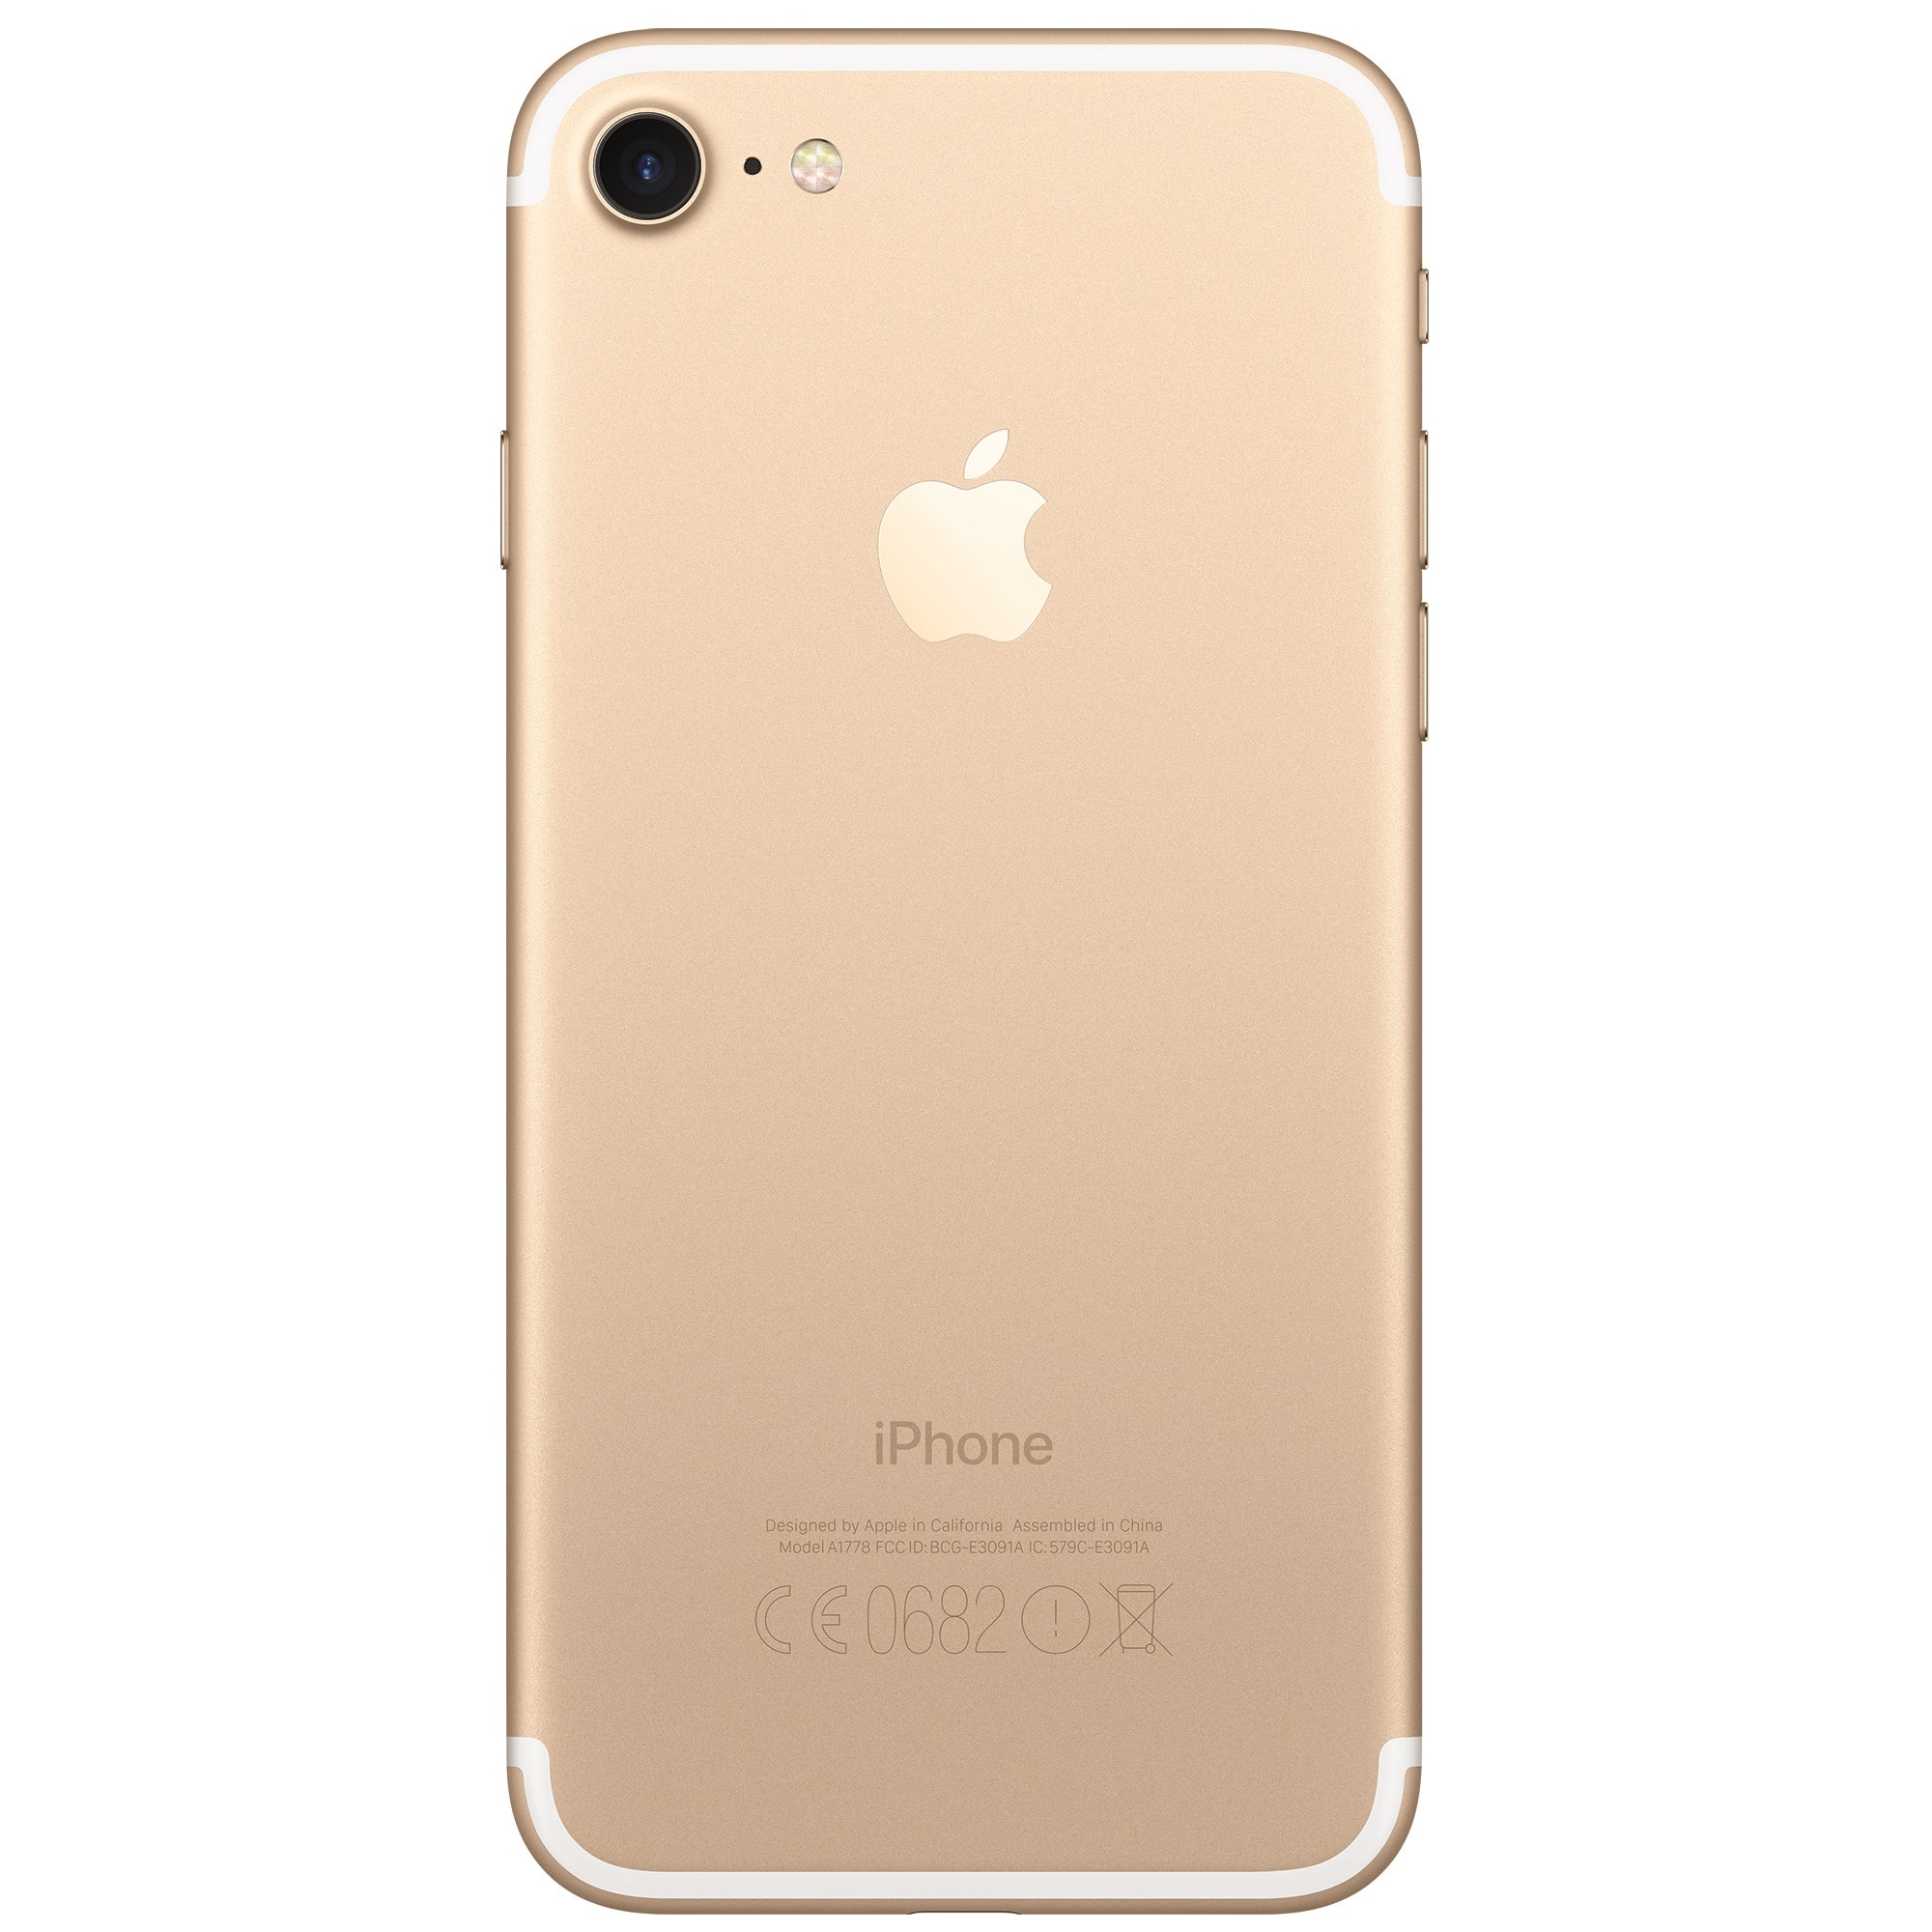 Где 7 iphone. Apple iphone 7 Plus 128gb. Apple iphone 7 Plus 32gb. Apple iphone 7 Plus 128gb Gold. Apple iphone 7 Plus 32gb Gold.